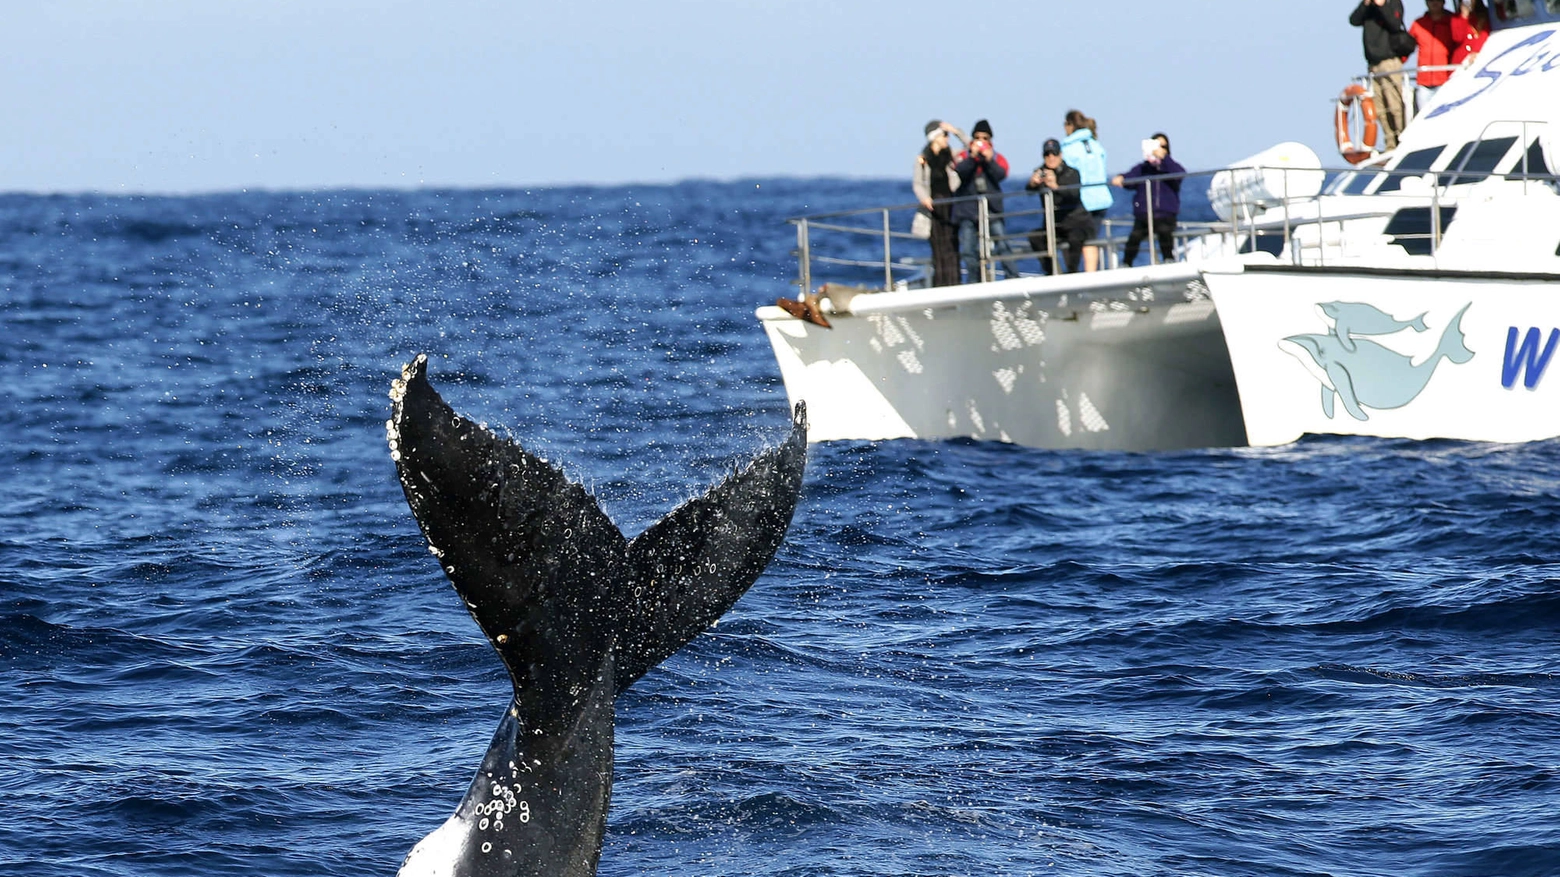 La meraviglia dell'incontro con la balena (Olycom)